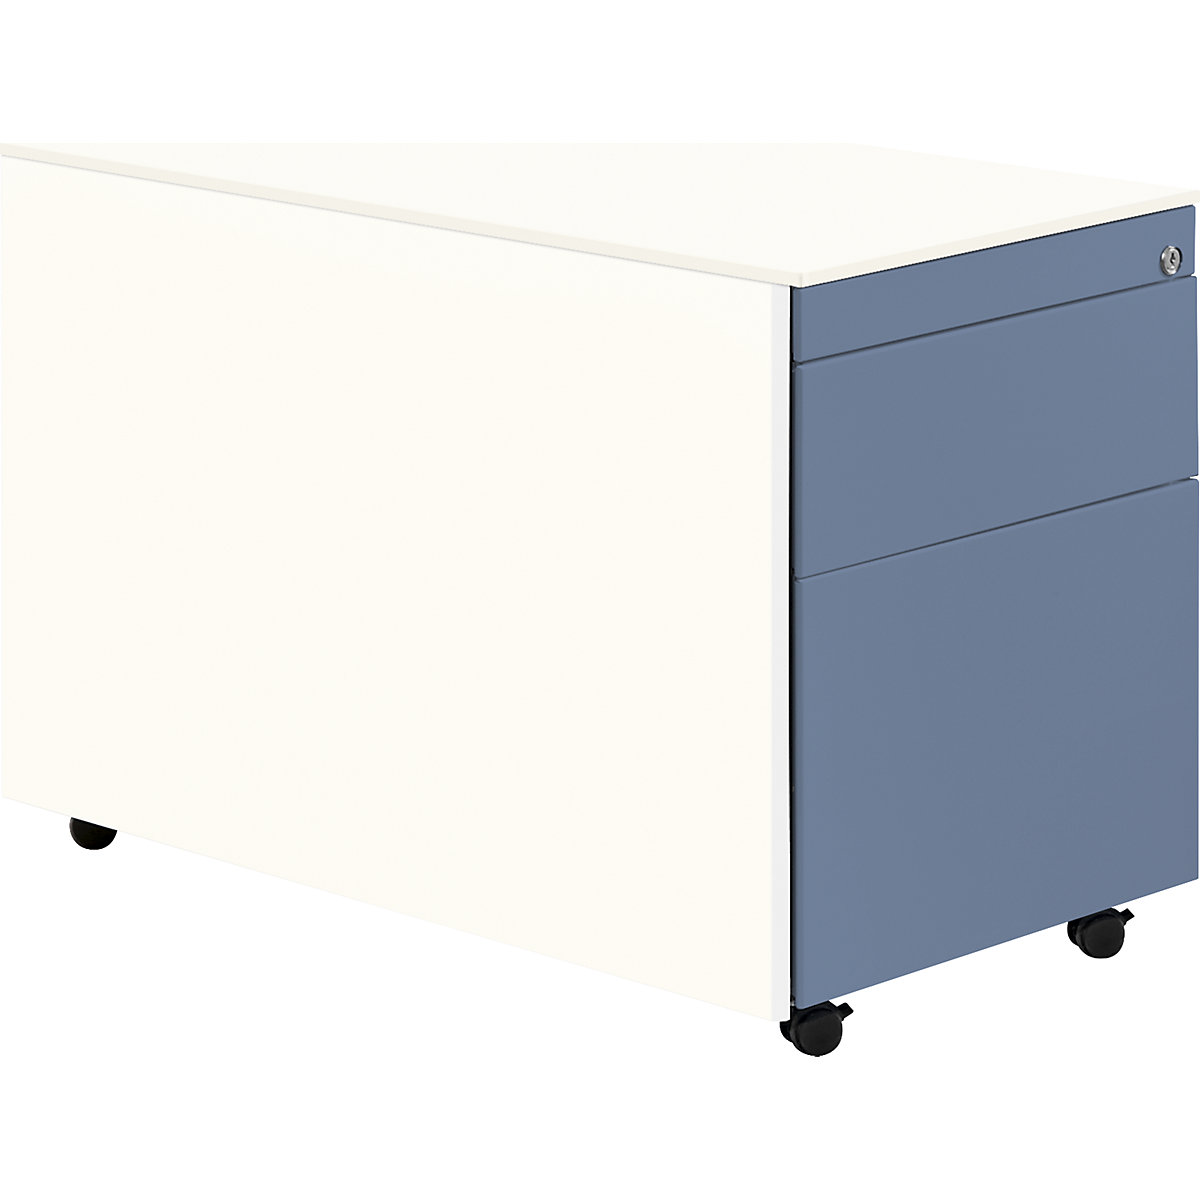 Casetieră cu sertare cu role – mauser, î. x ad. 570 x 800 mm, 1 sertar pentru materiale, 1 registratură suspendată, alb pur / albastru porumbel / alb pur